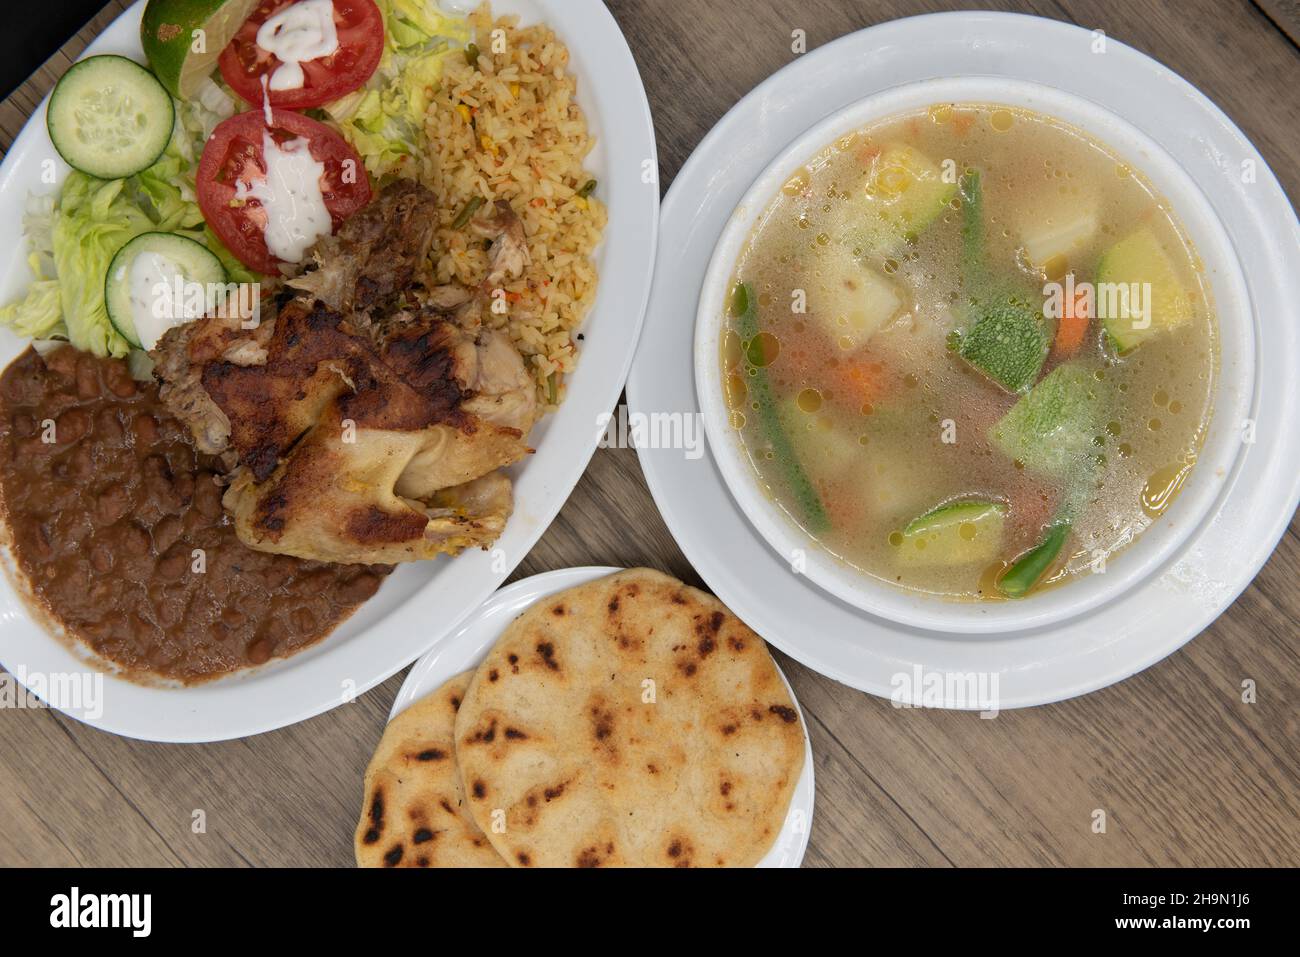 Enorme ciotola di zuppa indiana in una ciotola con riso, fagioli, pollo e pupupusa per rendere questo un pasto molto sostanzioso Latino. Foto Stock